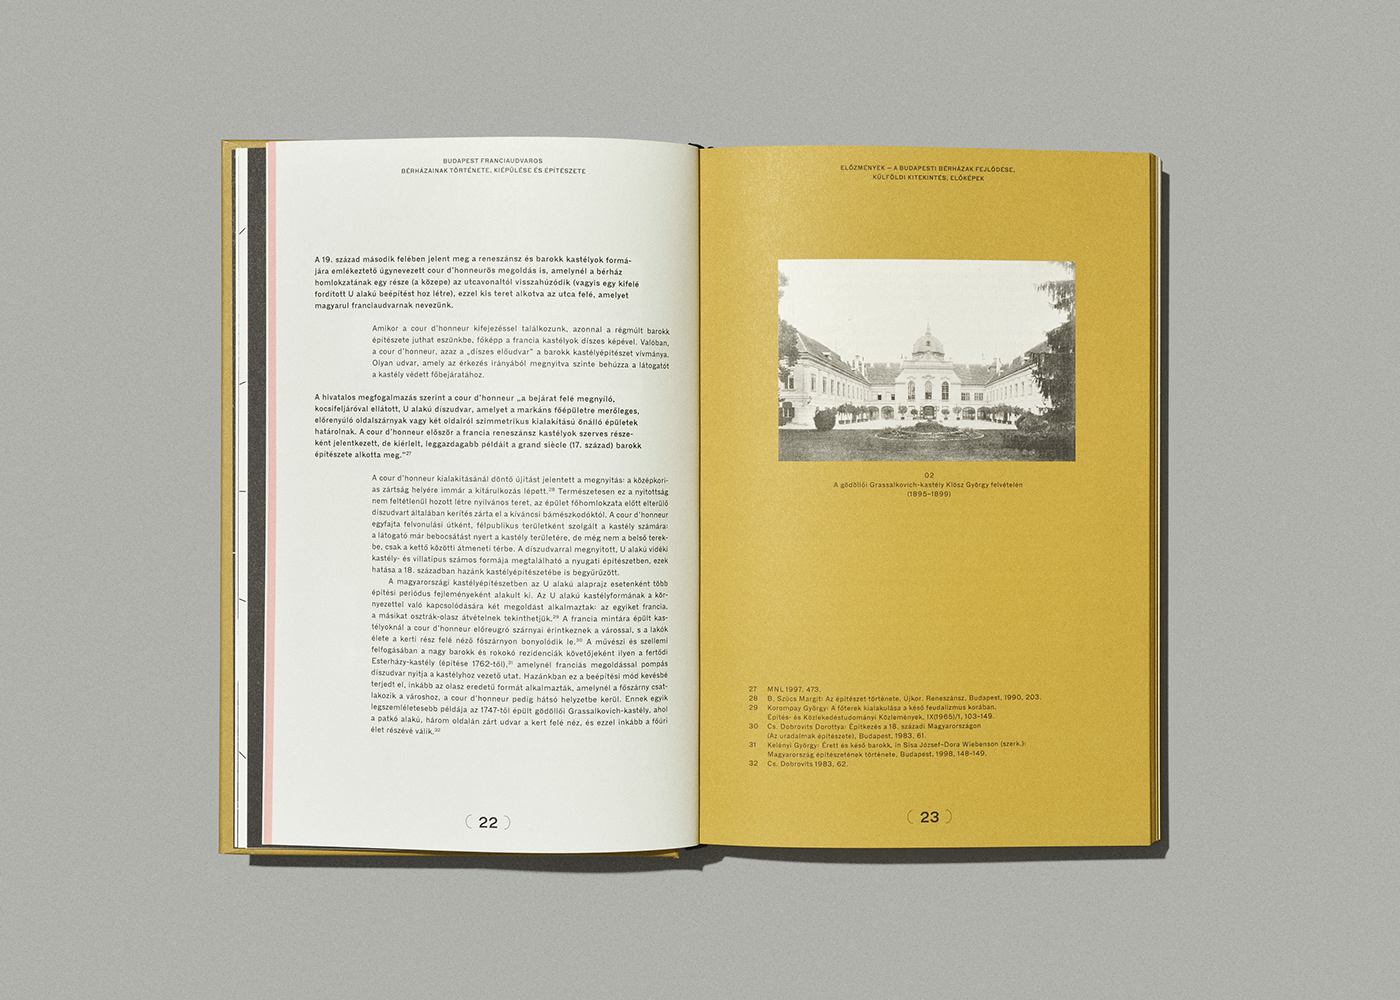 architecture book Bookdesign budapest budapestarchitecture coverdesign editorialdesign